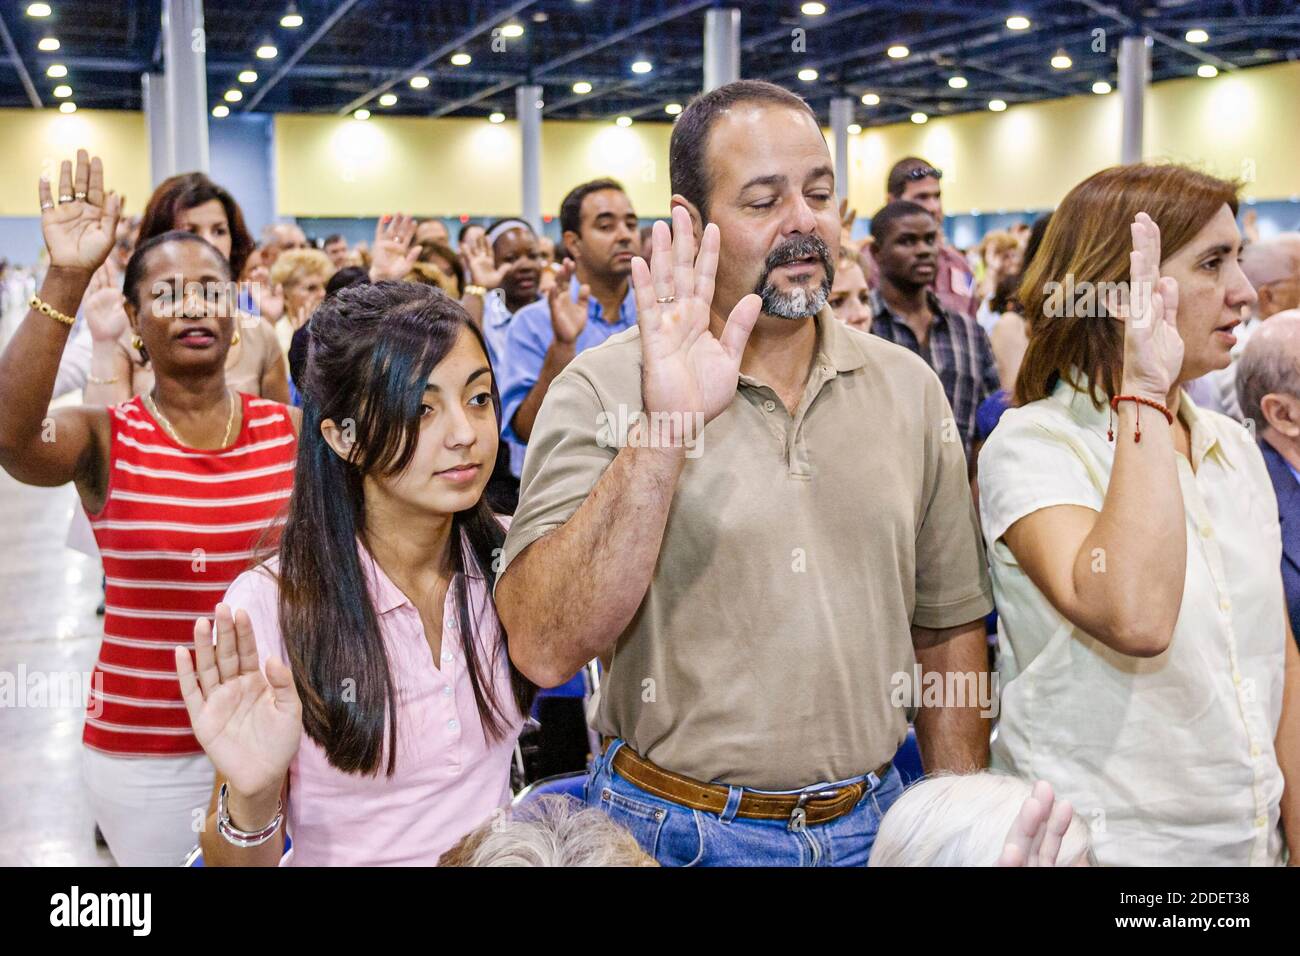 Florida, Miami Beach Convention Center, centro, cerimonia di naturalizzazione giuramento di cittadinanza promessa Allegiance, immigrati immigrati uomo donne nero asiatico Foto Stock